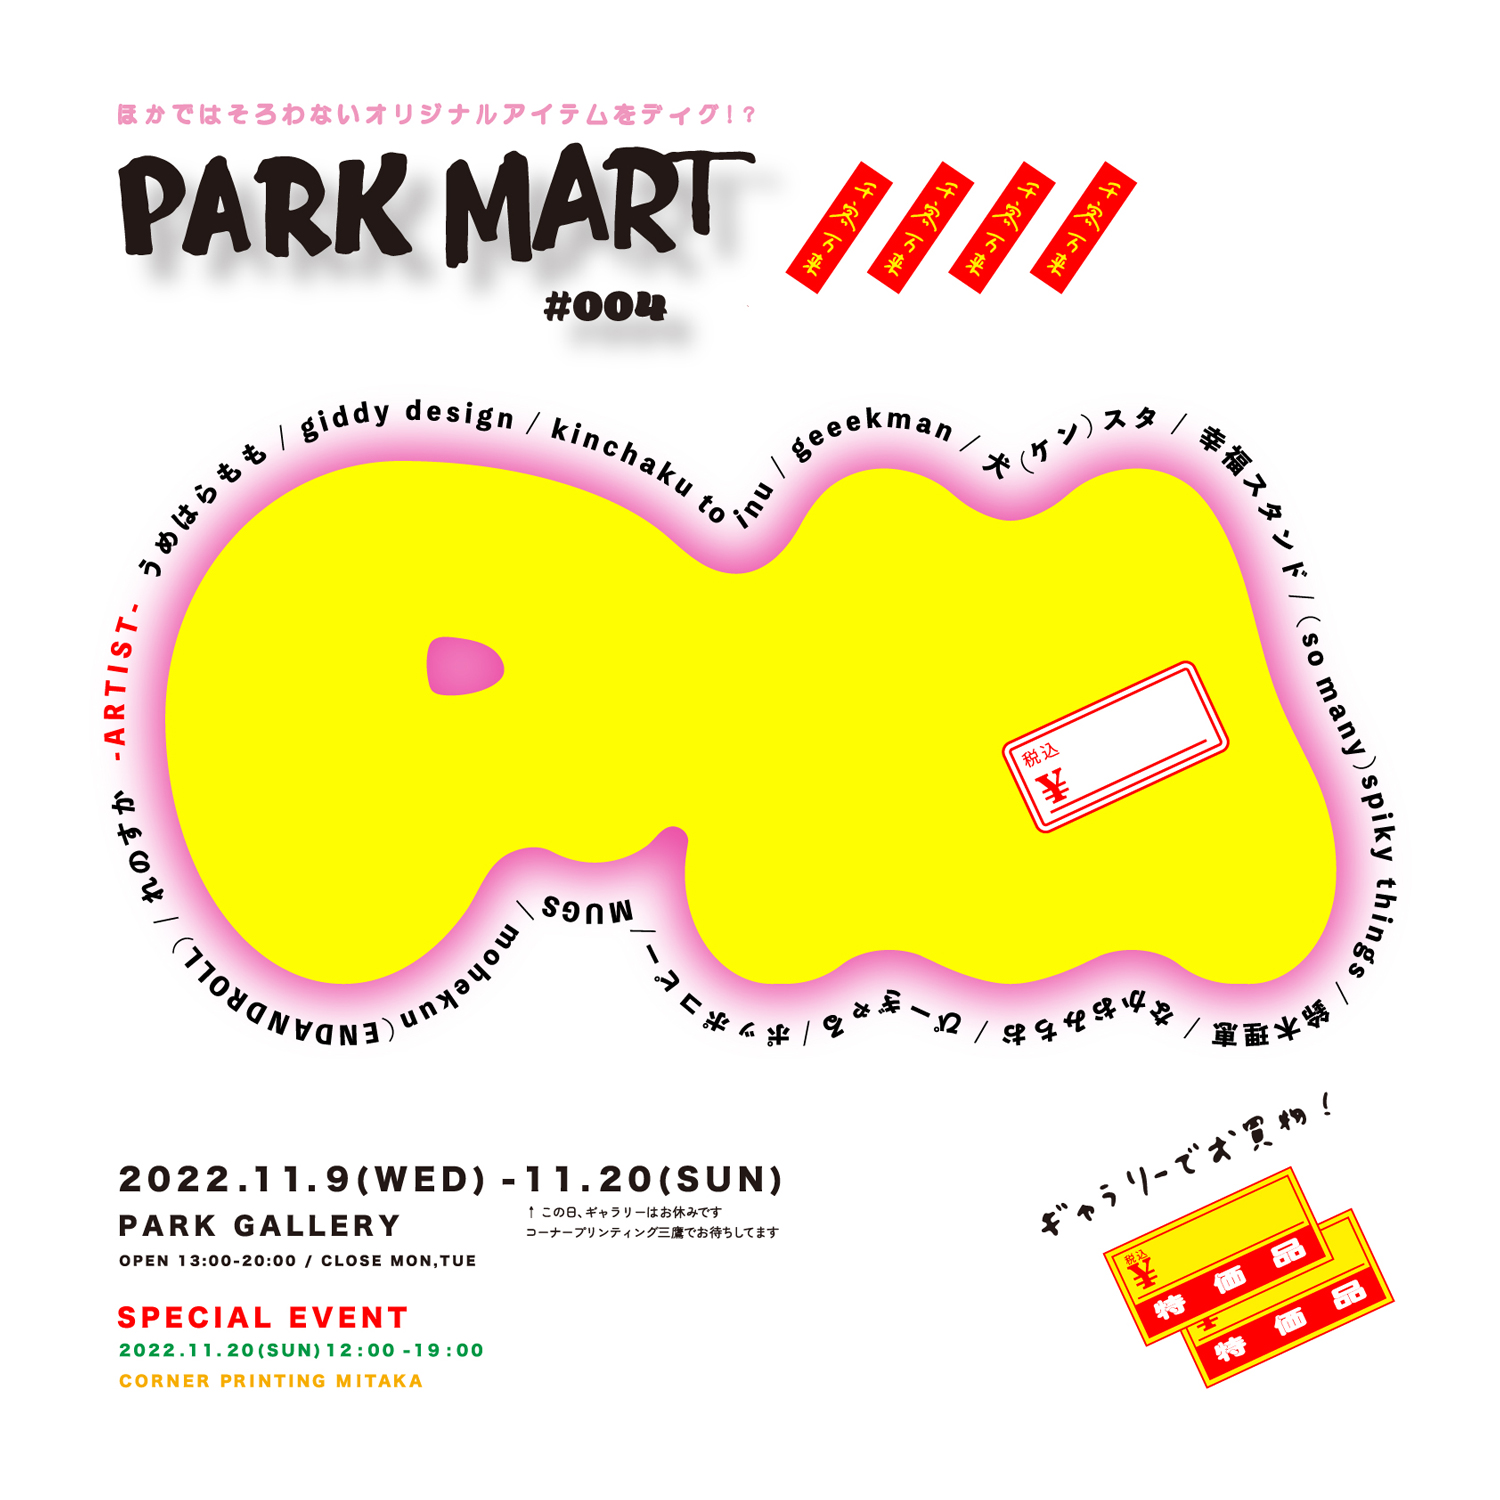 なかおみちお × PARK GALLERY presents「PARK MART #004」